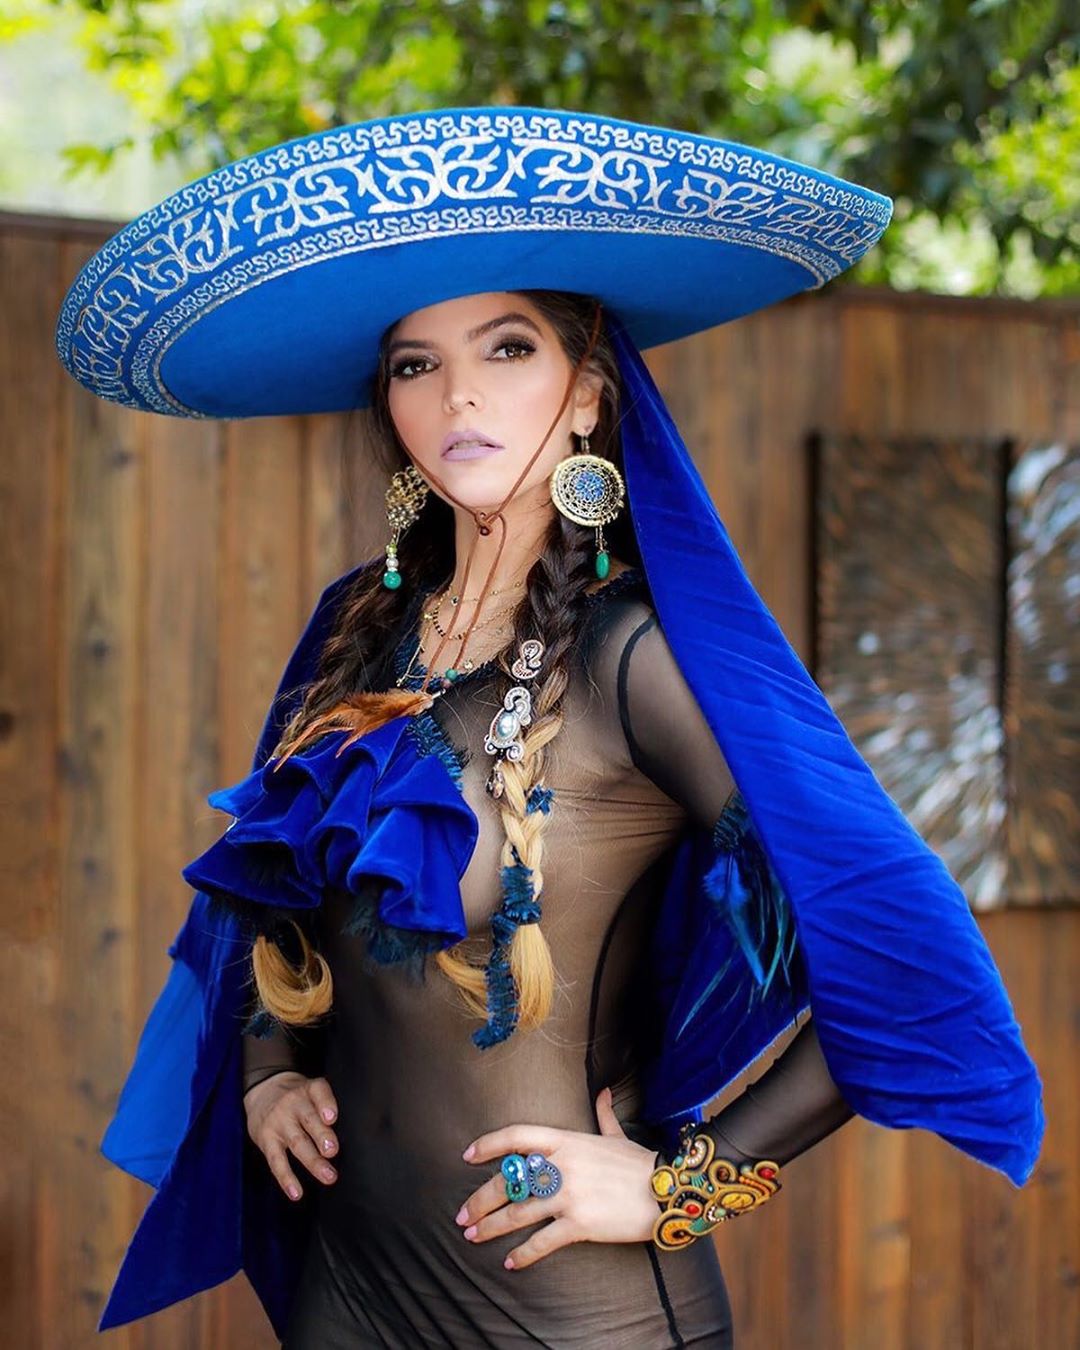 Ana Bárbara causó sensación con traje típico mexicano transparente - Infobae